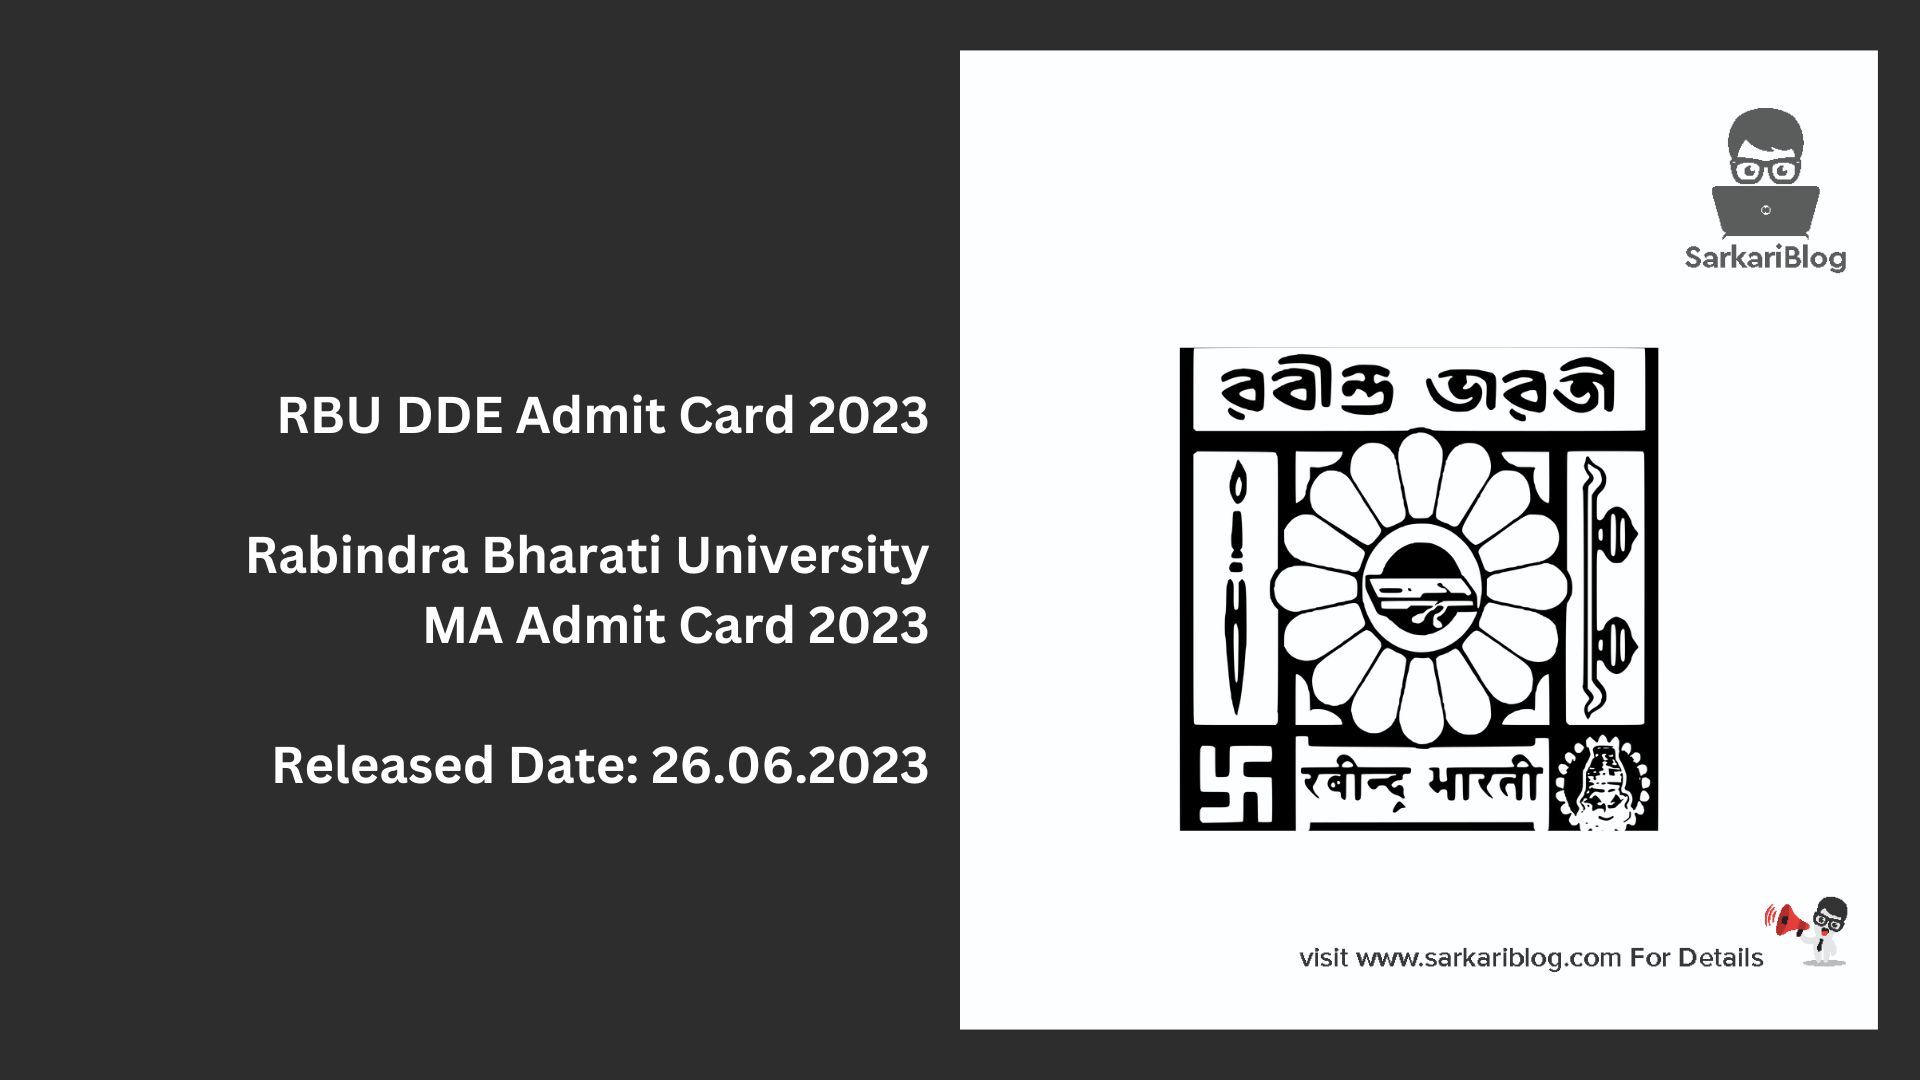 RBU DDE Admit Card 2023